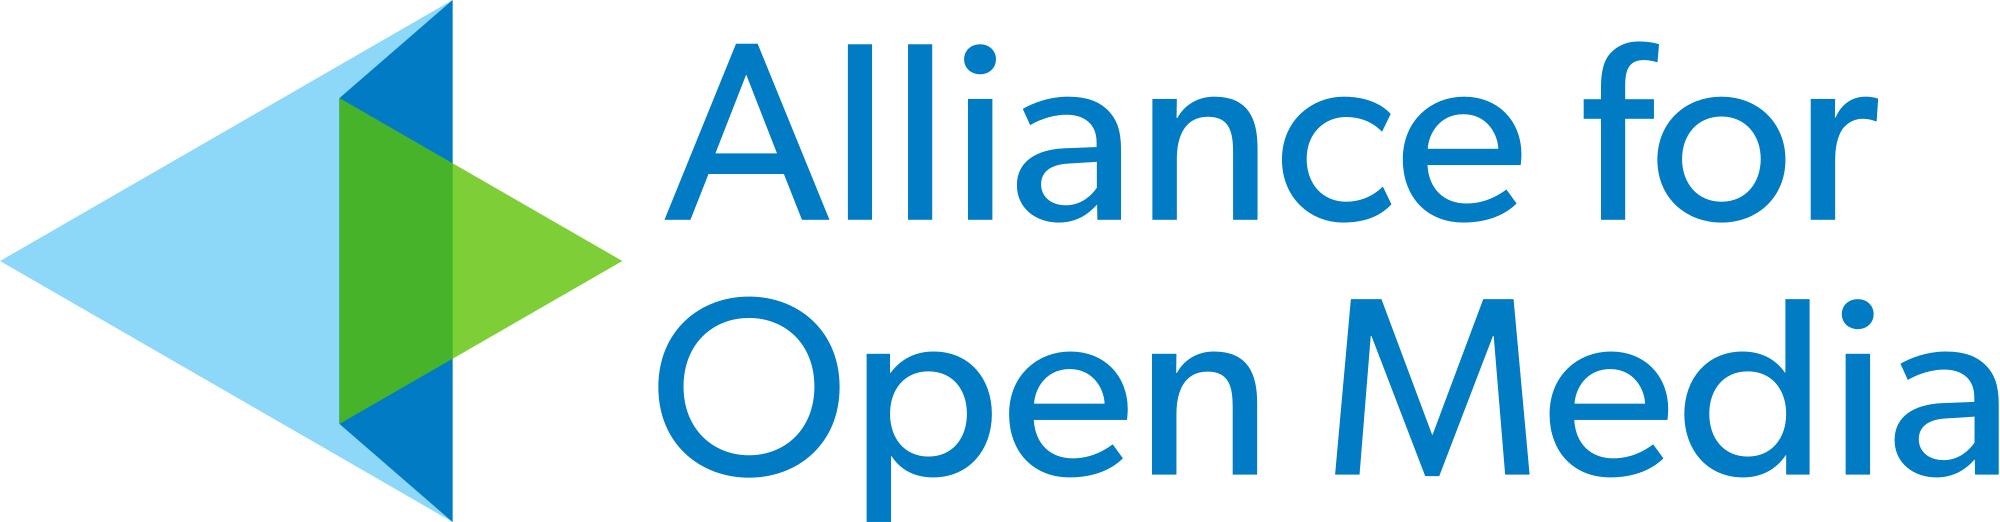 Alliance for Open Media logo